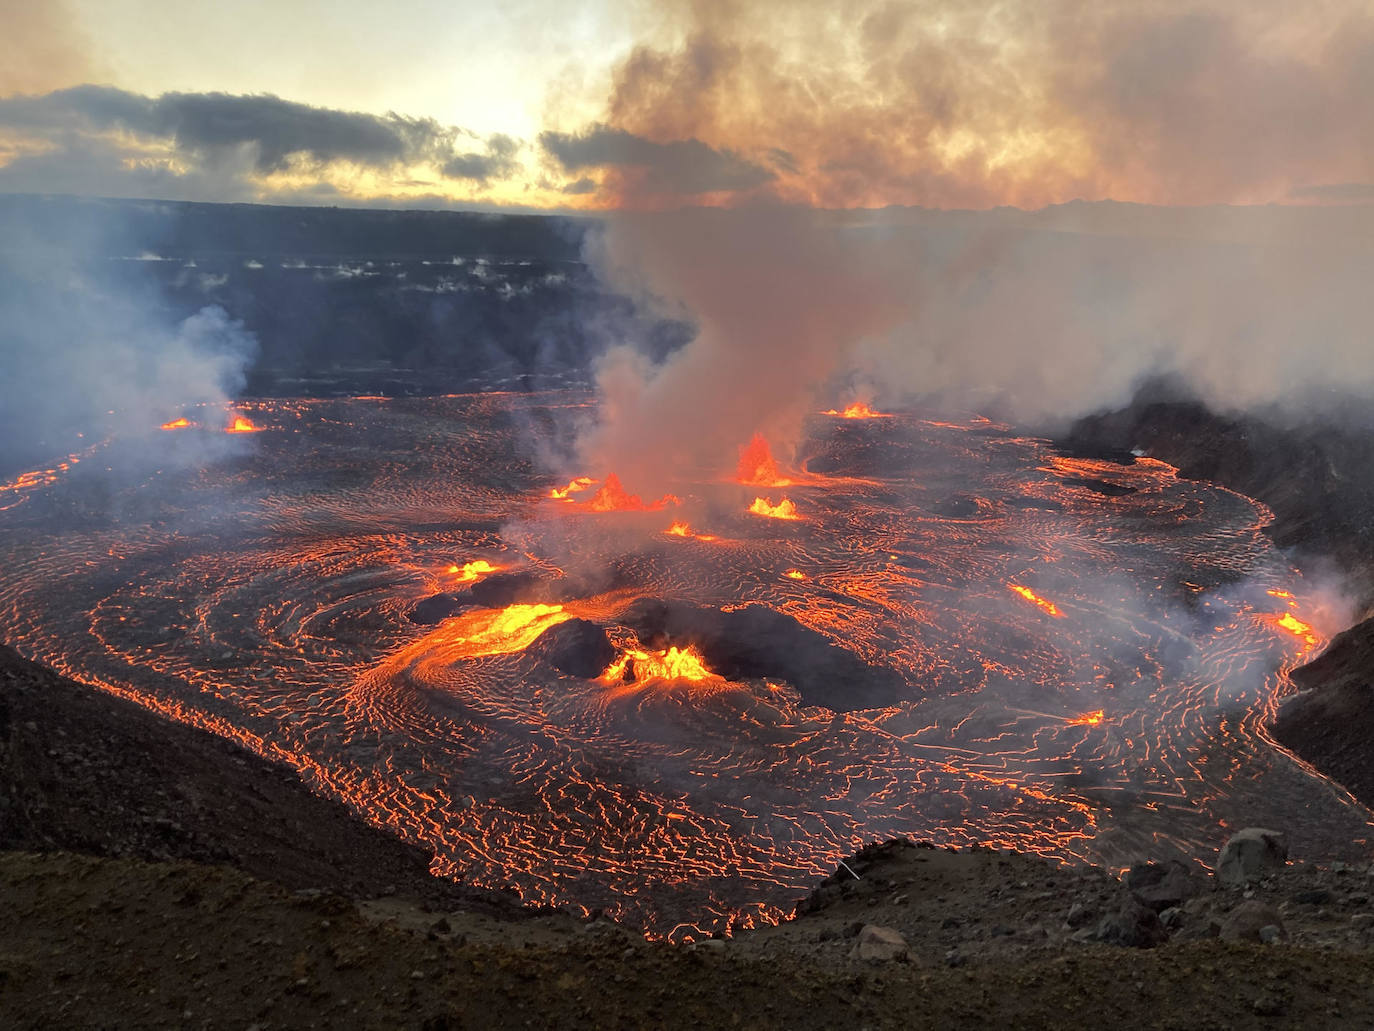 Fotografía donde se muestra el volcán Kilauea en erupción, uno de los más jóvenes y activos de Hawái (EE.UU.). El Observatorio de Volcanes Hawaiano indicó en un comunicado que sobre las 4.00 hora local (14.00 GMT) de este miércoles detectó «brillo en las imágenes de webcam de la cumbre del Kilauea, lo que indica el comienzo de una erupción en el cráter Halemaumau».